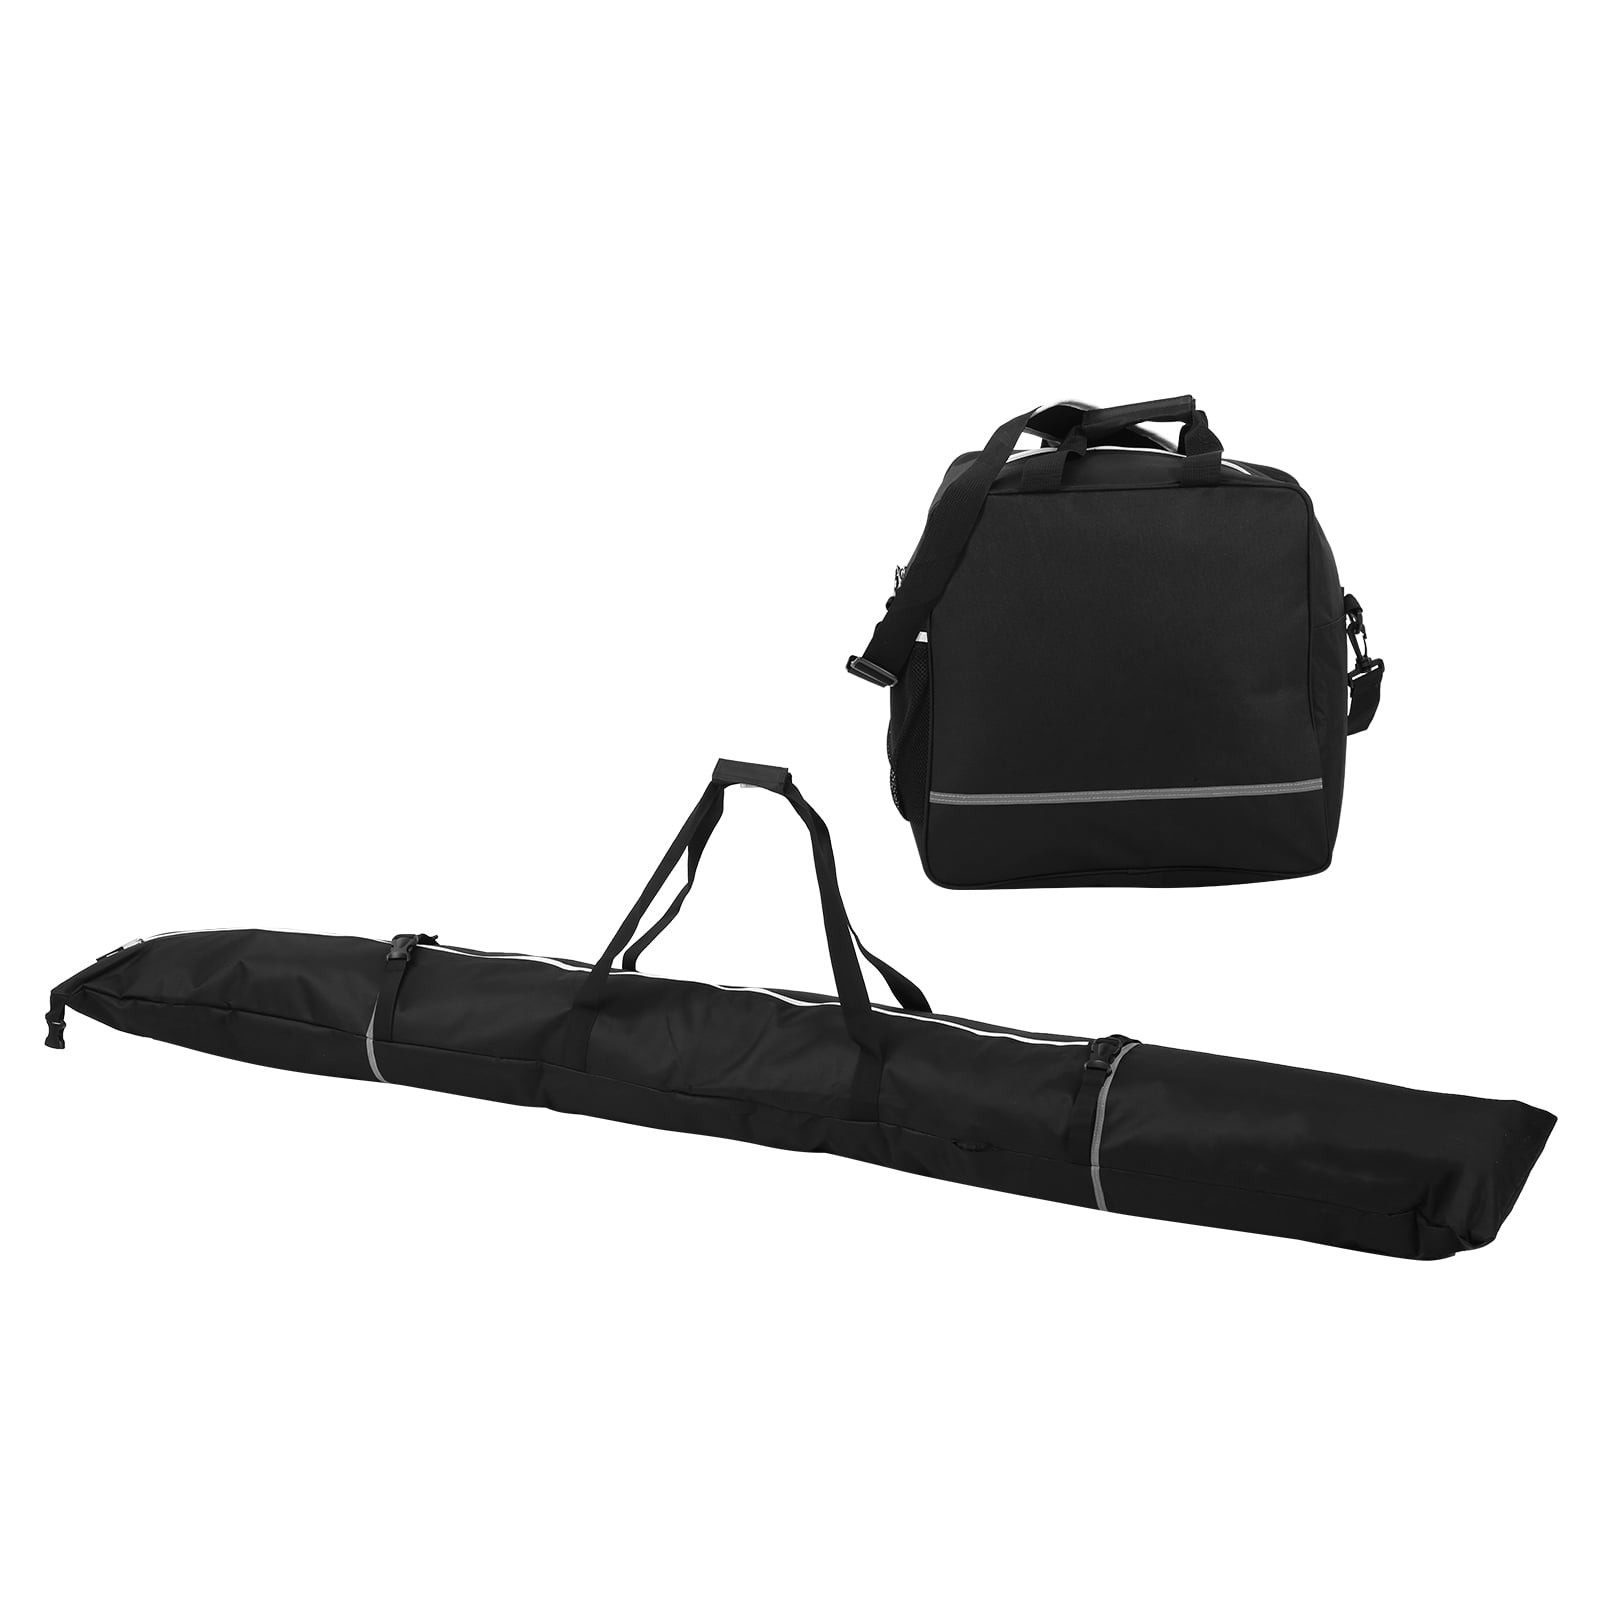 Snowboard Bag, Ski Boot Handbag Portable Nylon For Airports For 